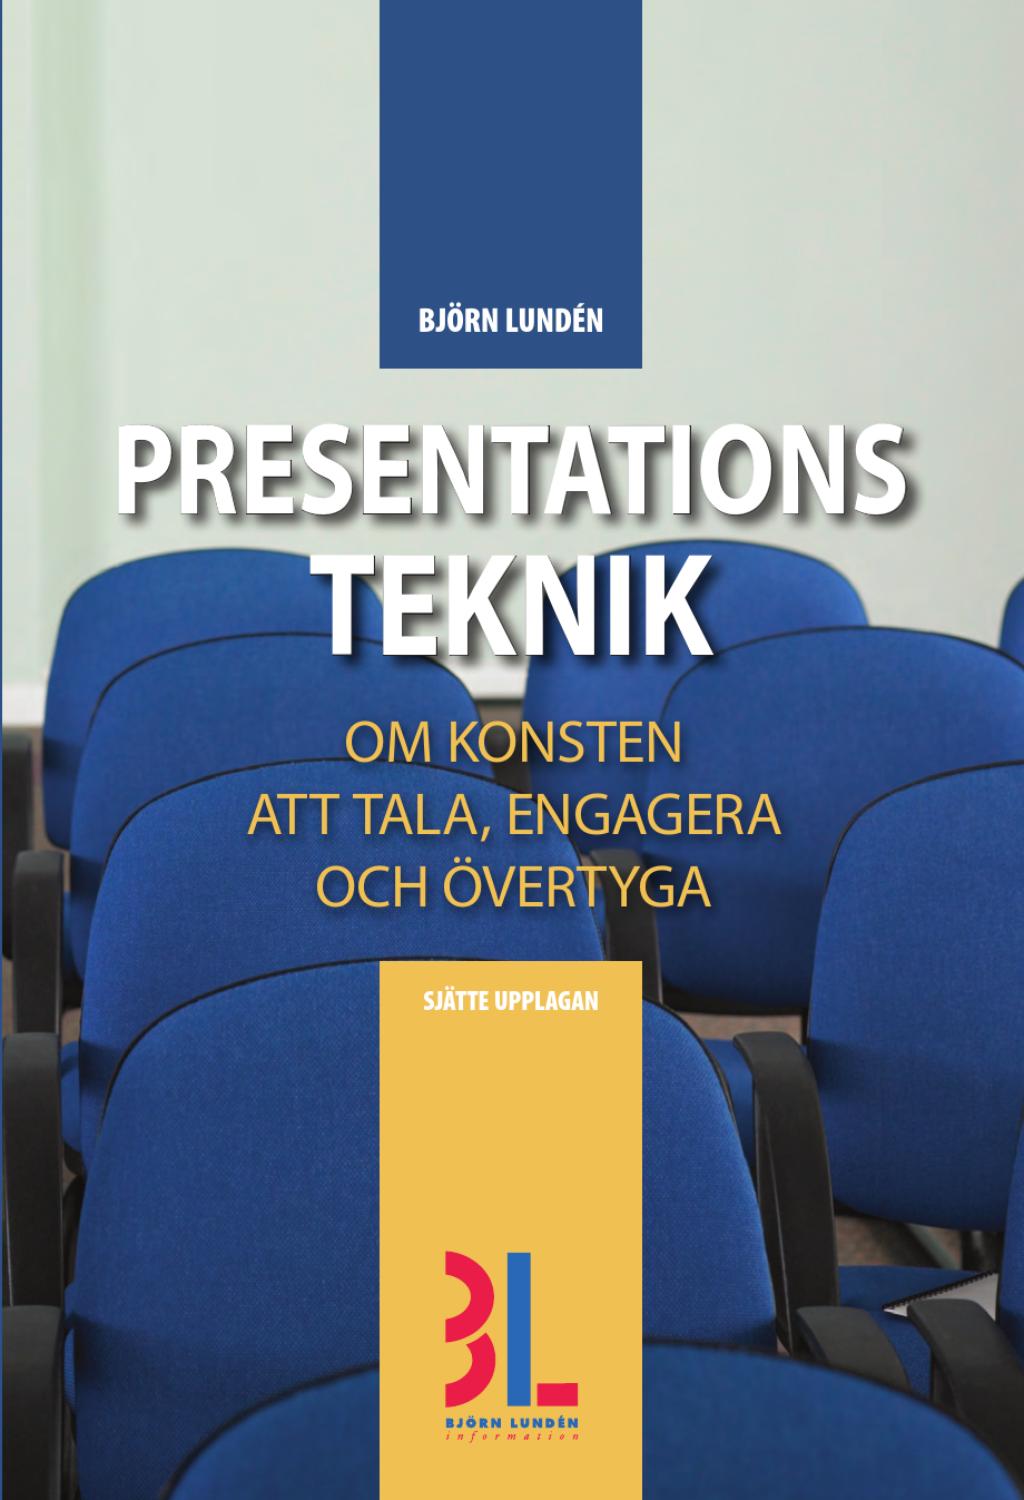 Presentationsteknik : om konsten att tala, engagera och övertyga; Björn Lundén; 2013